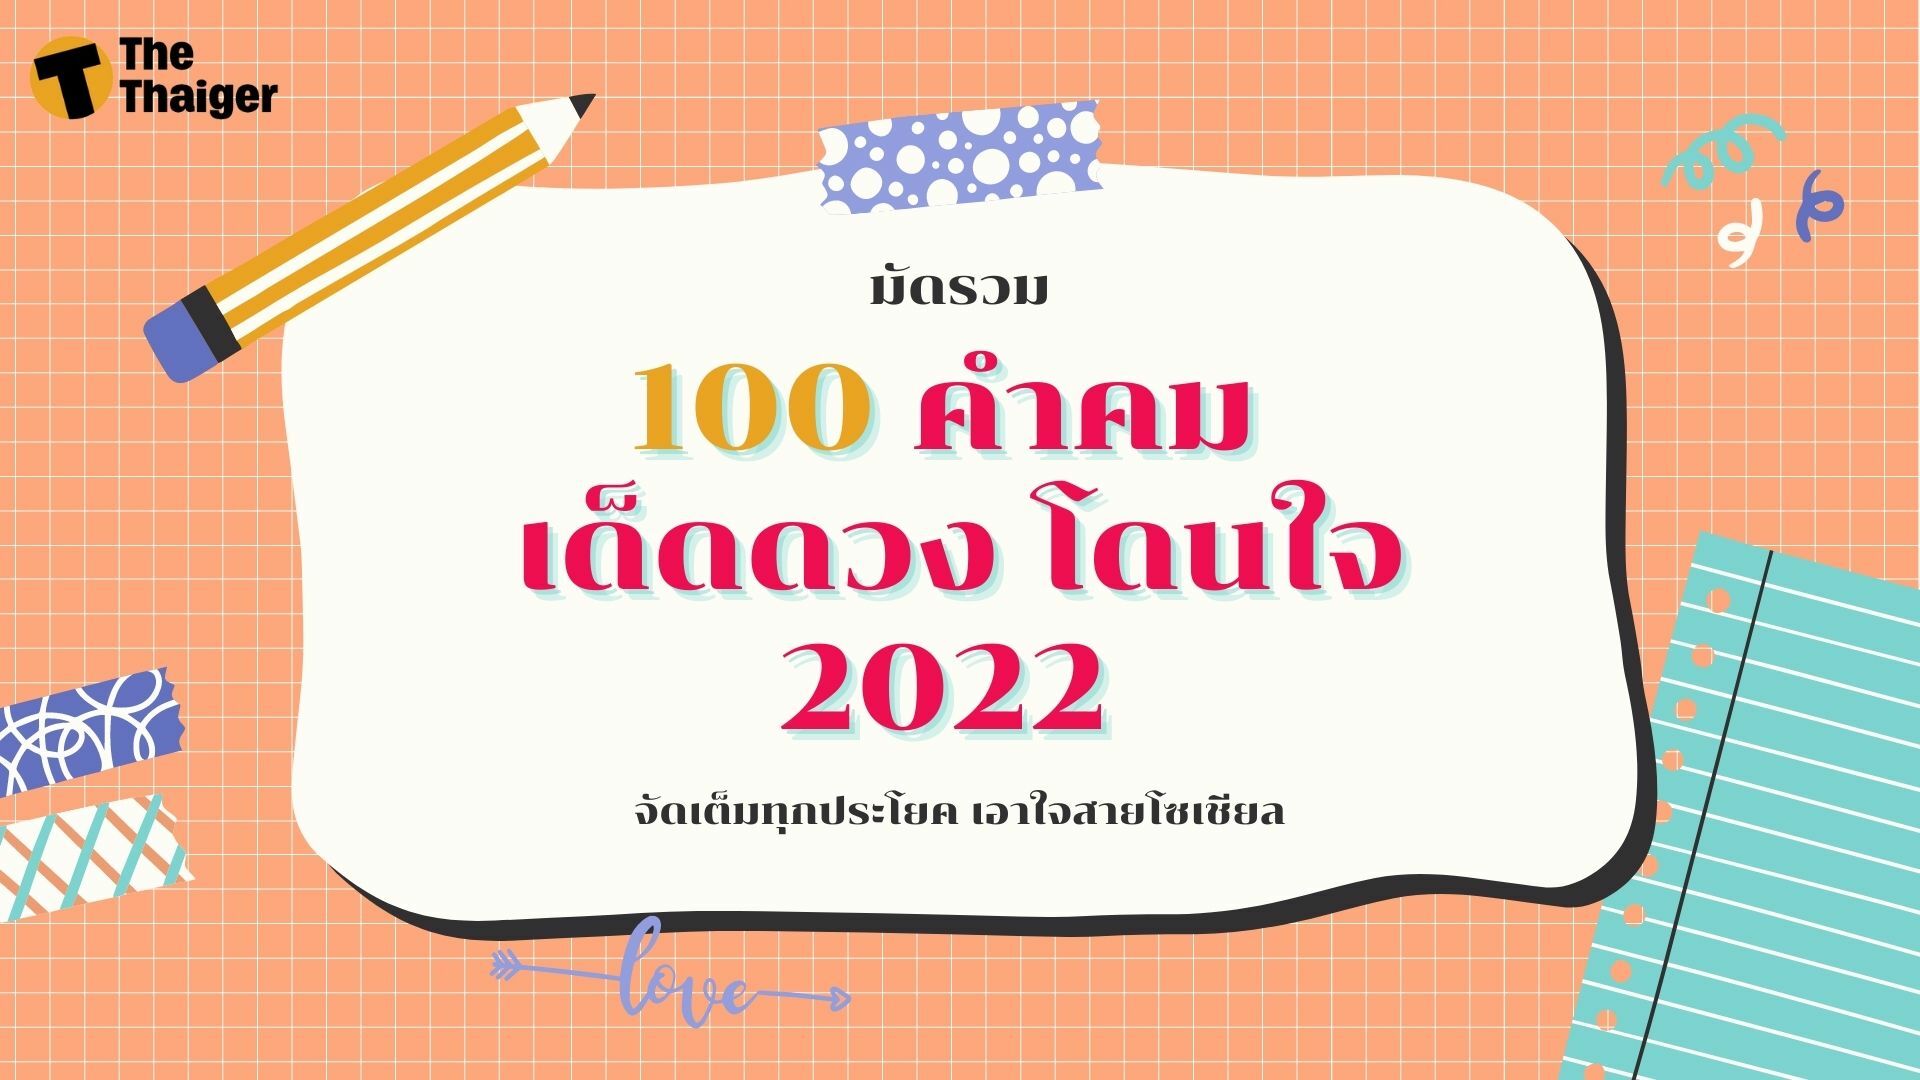 มัดรวม 100 คำคม 2022 กวน ๆ คนโสด จัดเต็มทุกประโยค เอาใจสายโซเชียล | Thaiger  ข่าวไทย